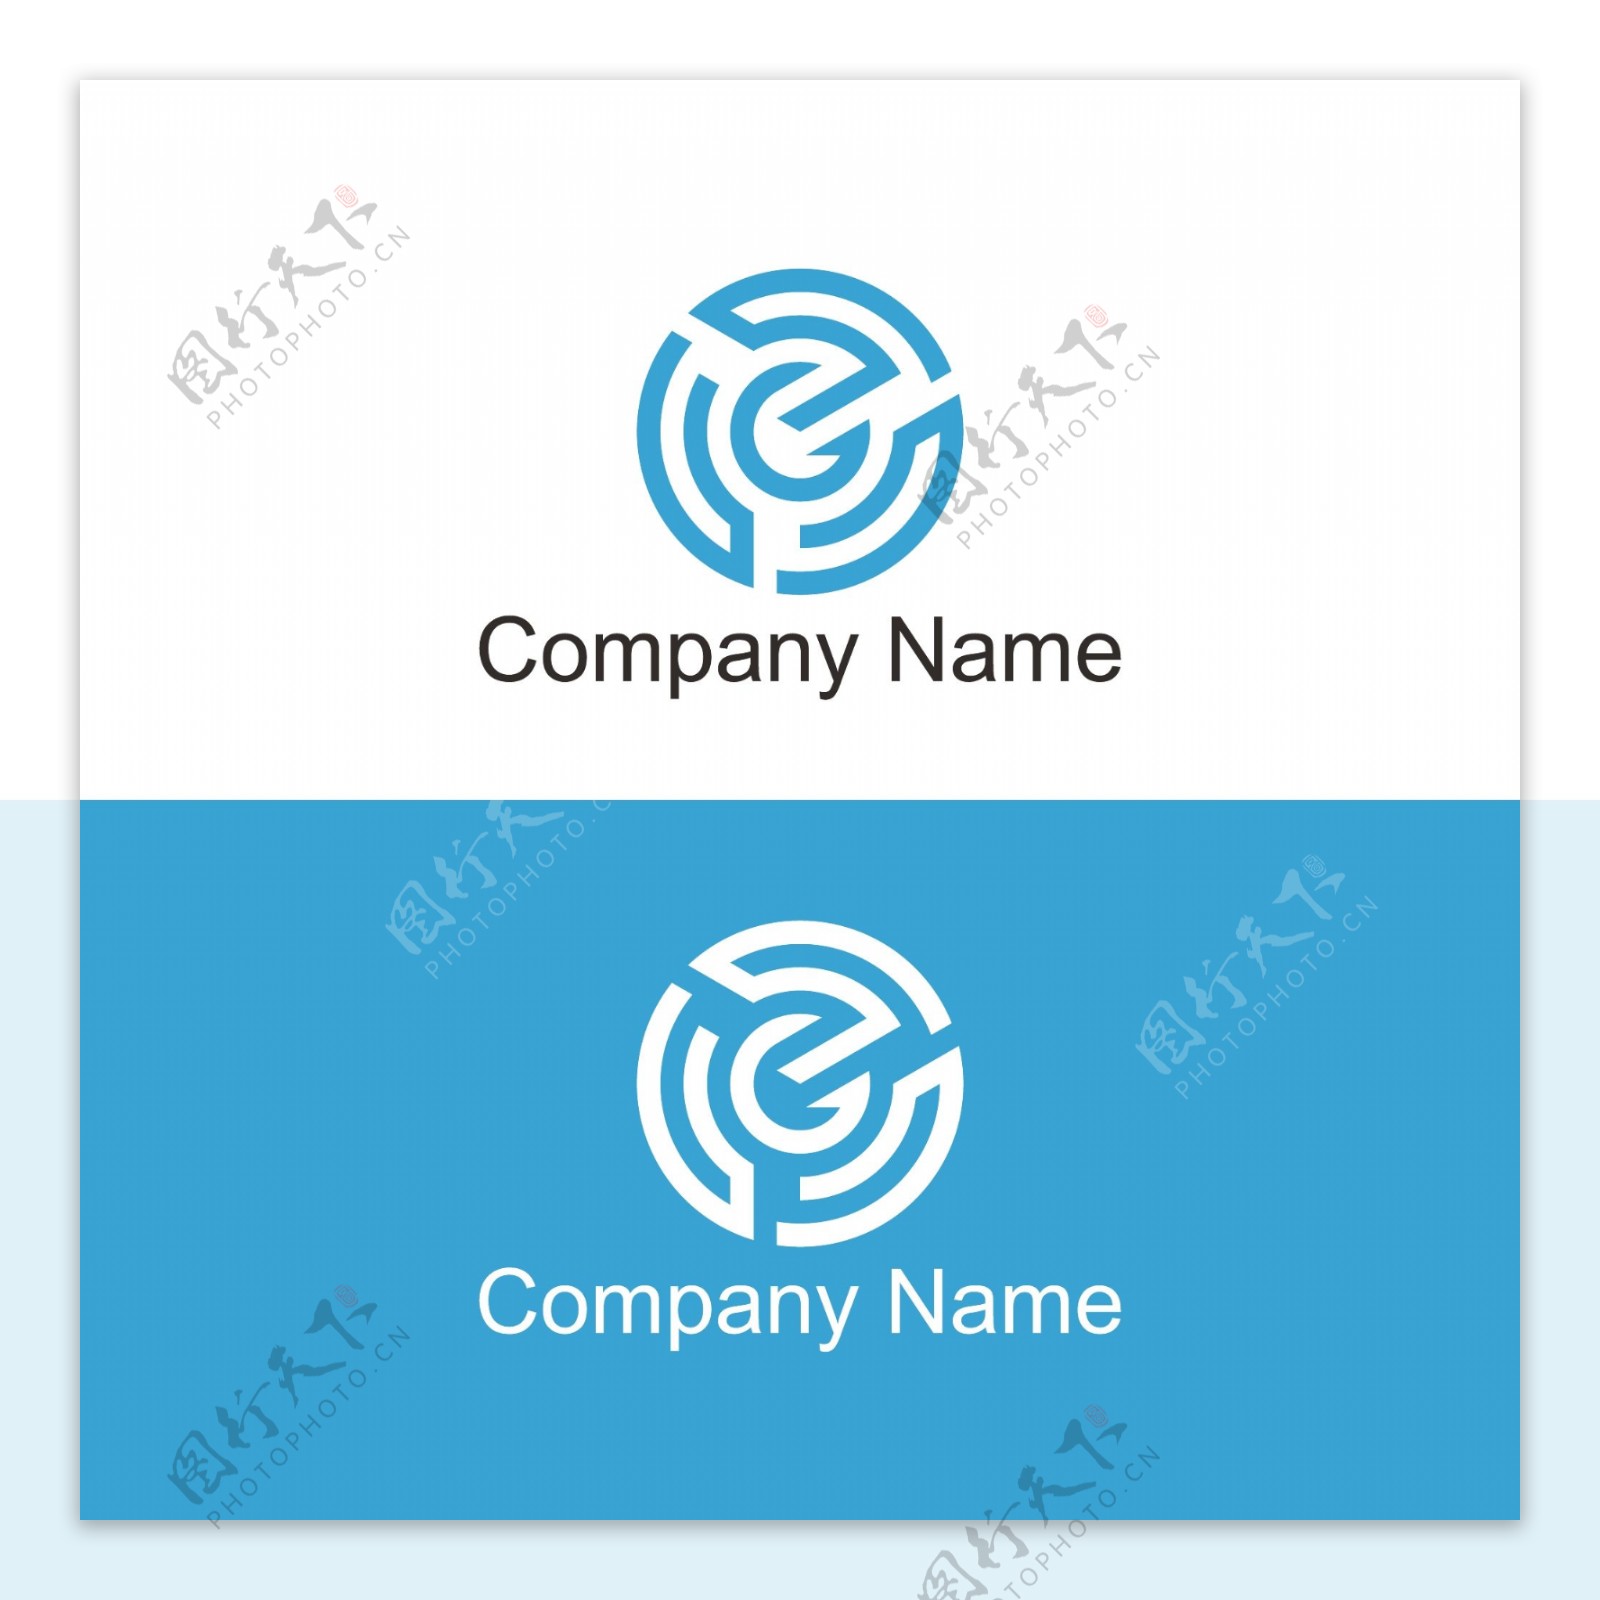 企业文化标志logo设计